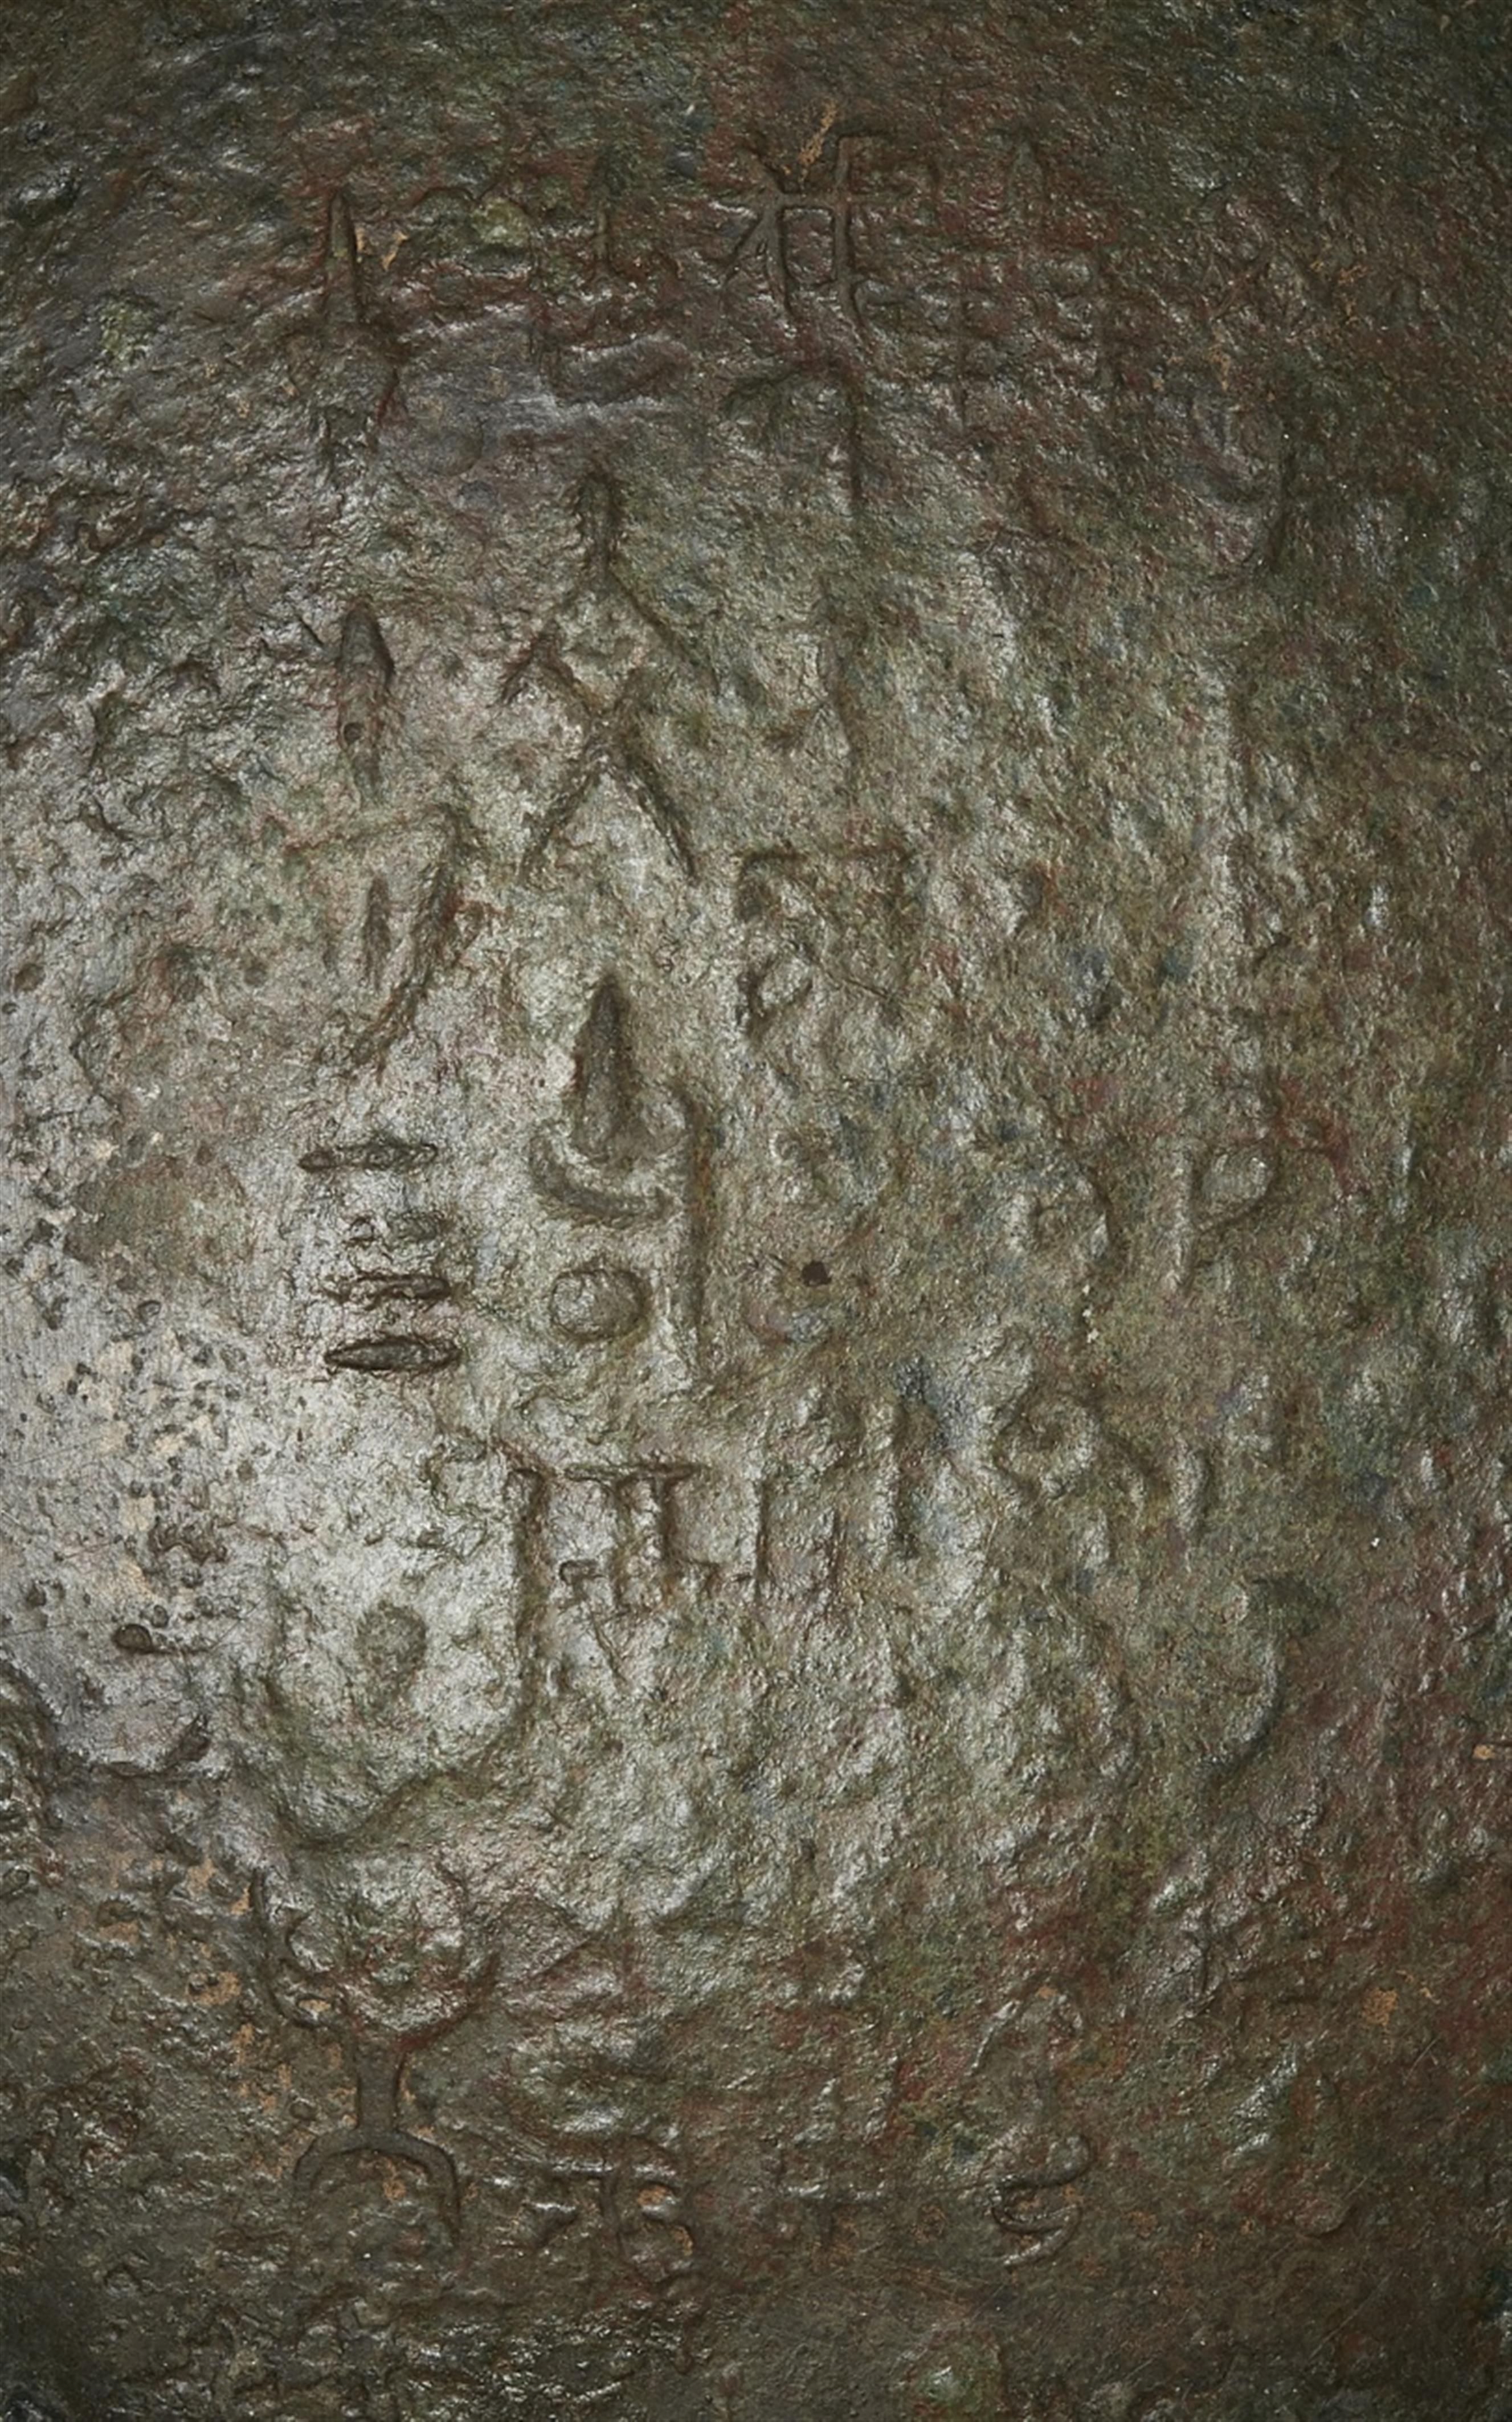 Speisegefäß vom Typ gui. Bronze. Frühe Zhou-Zeit, 12./10. Jh. v. Chr. - image-4